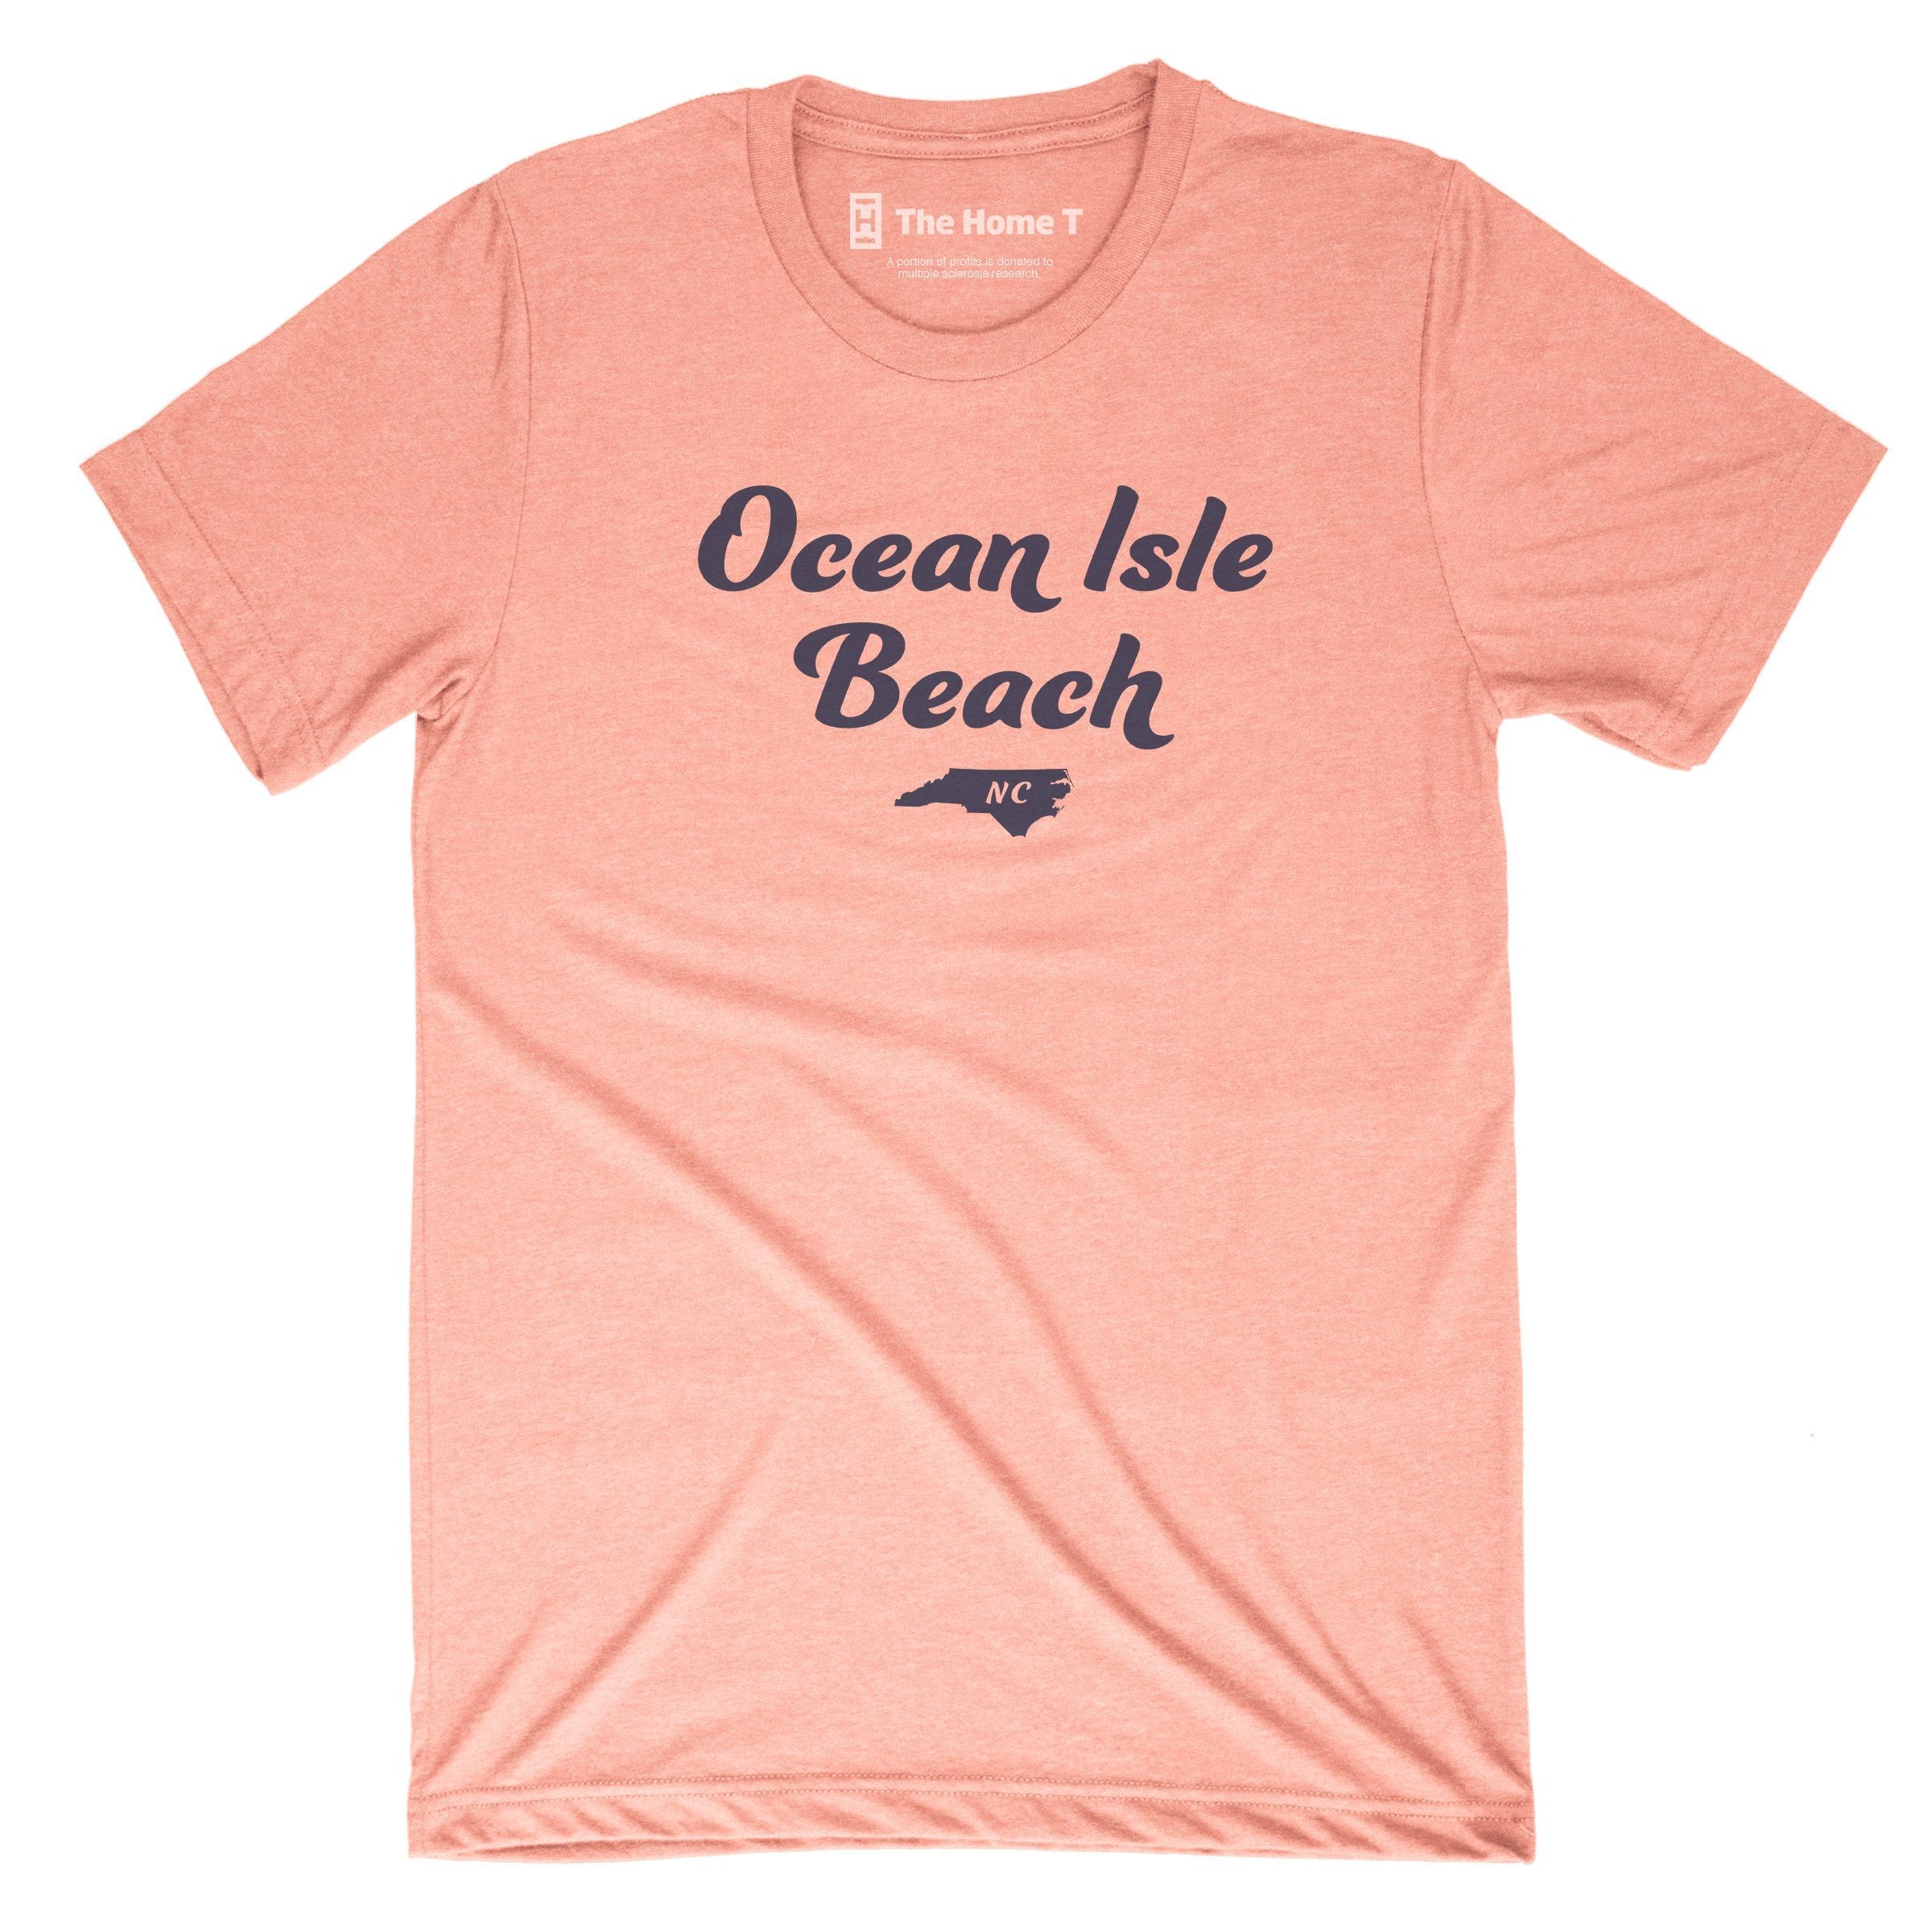 Ocean Isle Beach Town The Home T